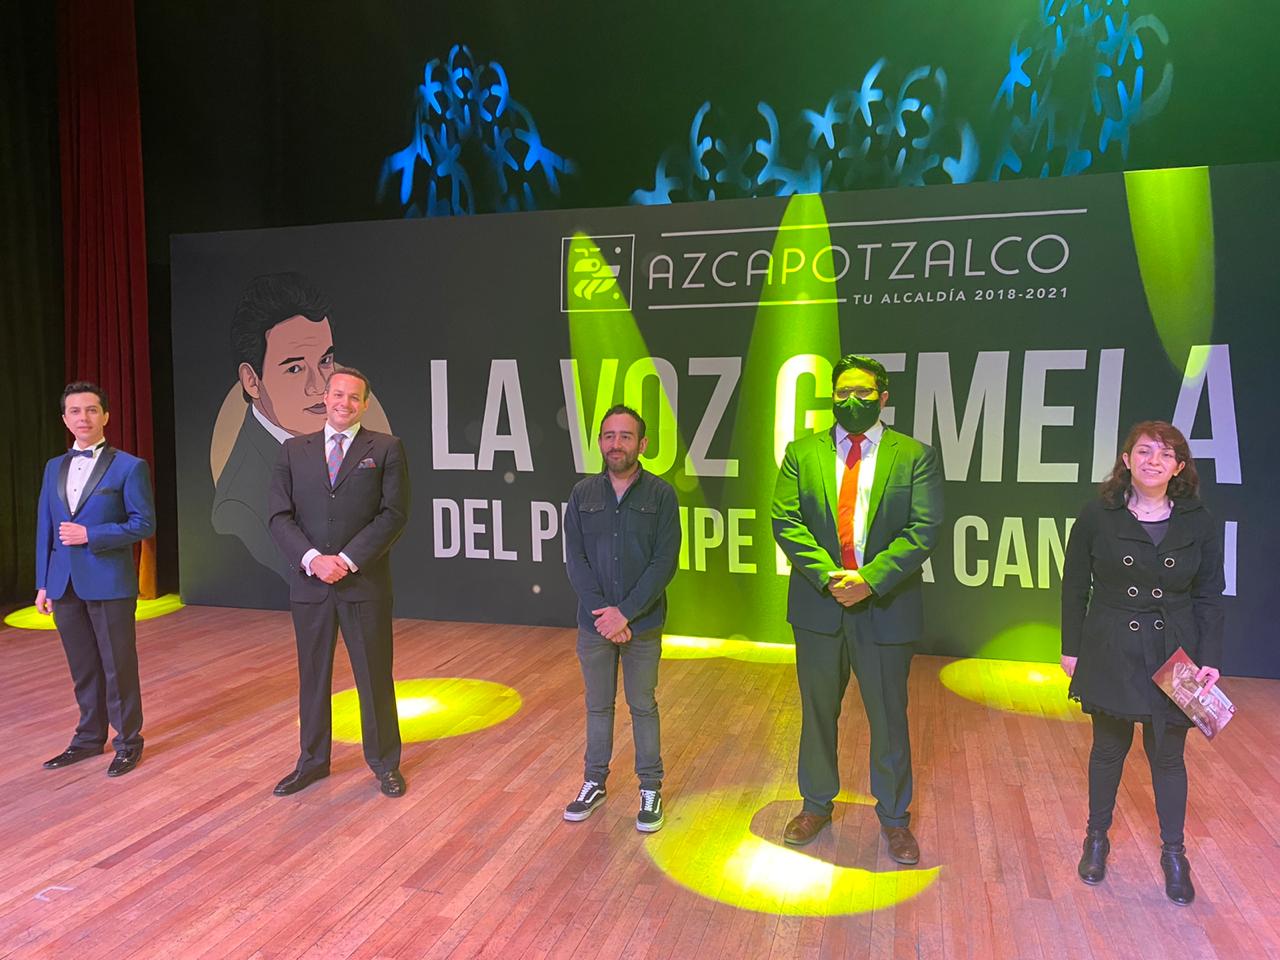 Azcapotzalco tendrá concierto en línea con los ganadores de “La voz gemela del príncipe de la canción” portada 2